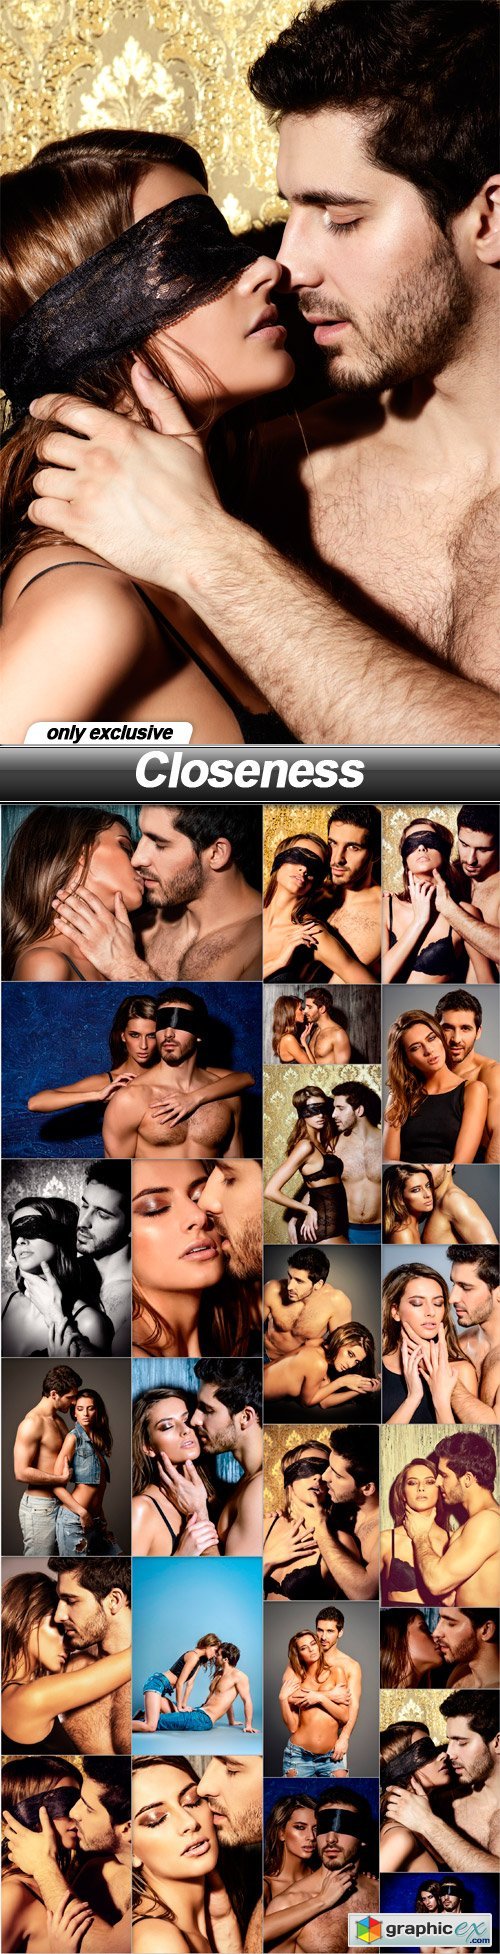 Closeness - 25 UHQ JPEG